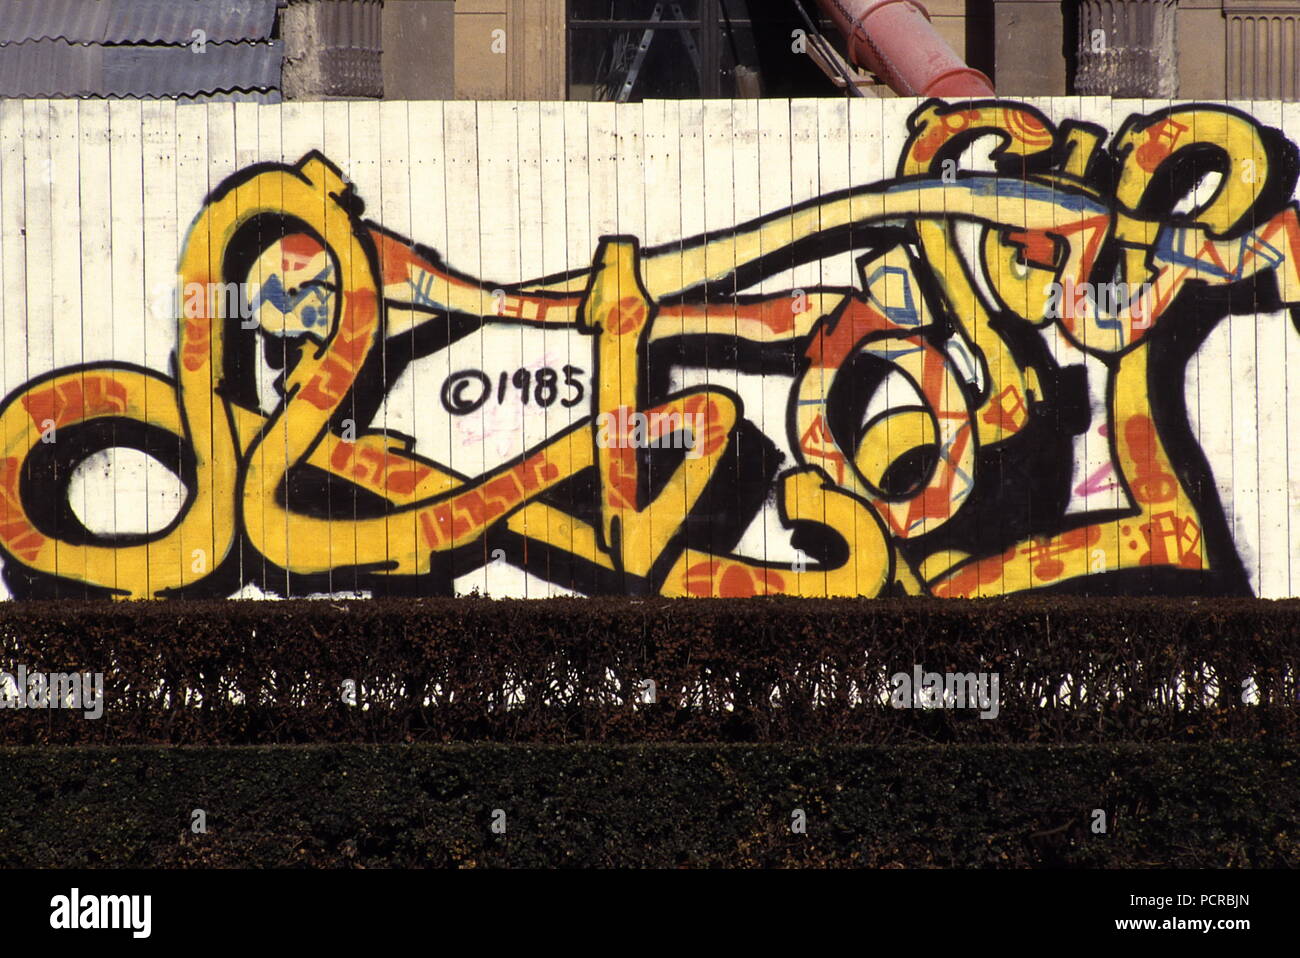 AJAXNETPHOTO. 1985. Parigi, Francia. - Arte dei graffiti - IMMAGINI GRAFITTI dipinta su un sito in costruzione tavolato in legno palizzata nel centro della citta'. Foto:JONATHAN EASTLAND/AJAX REF:81985 Foto Stock